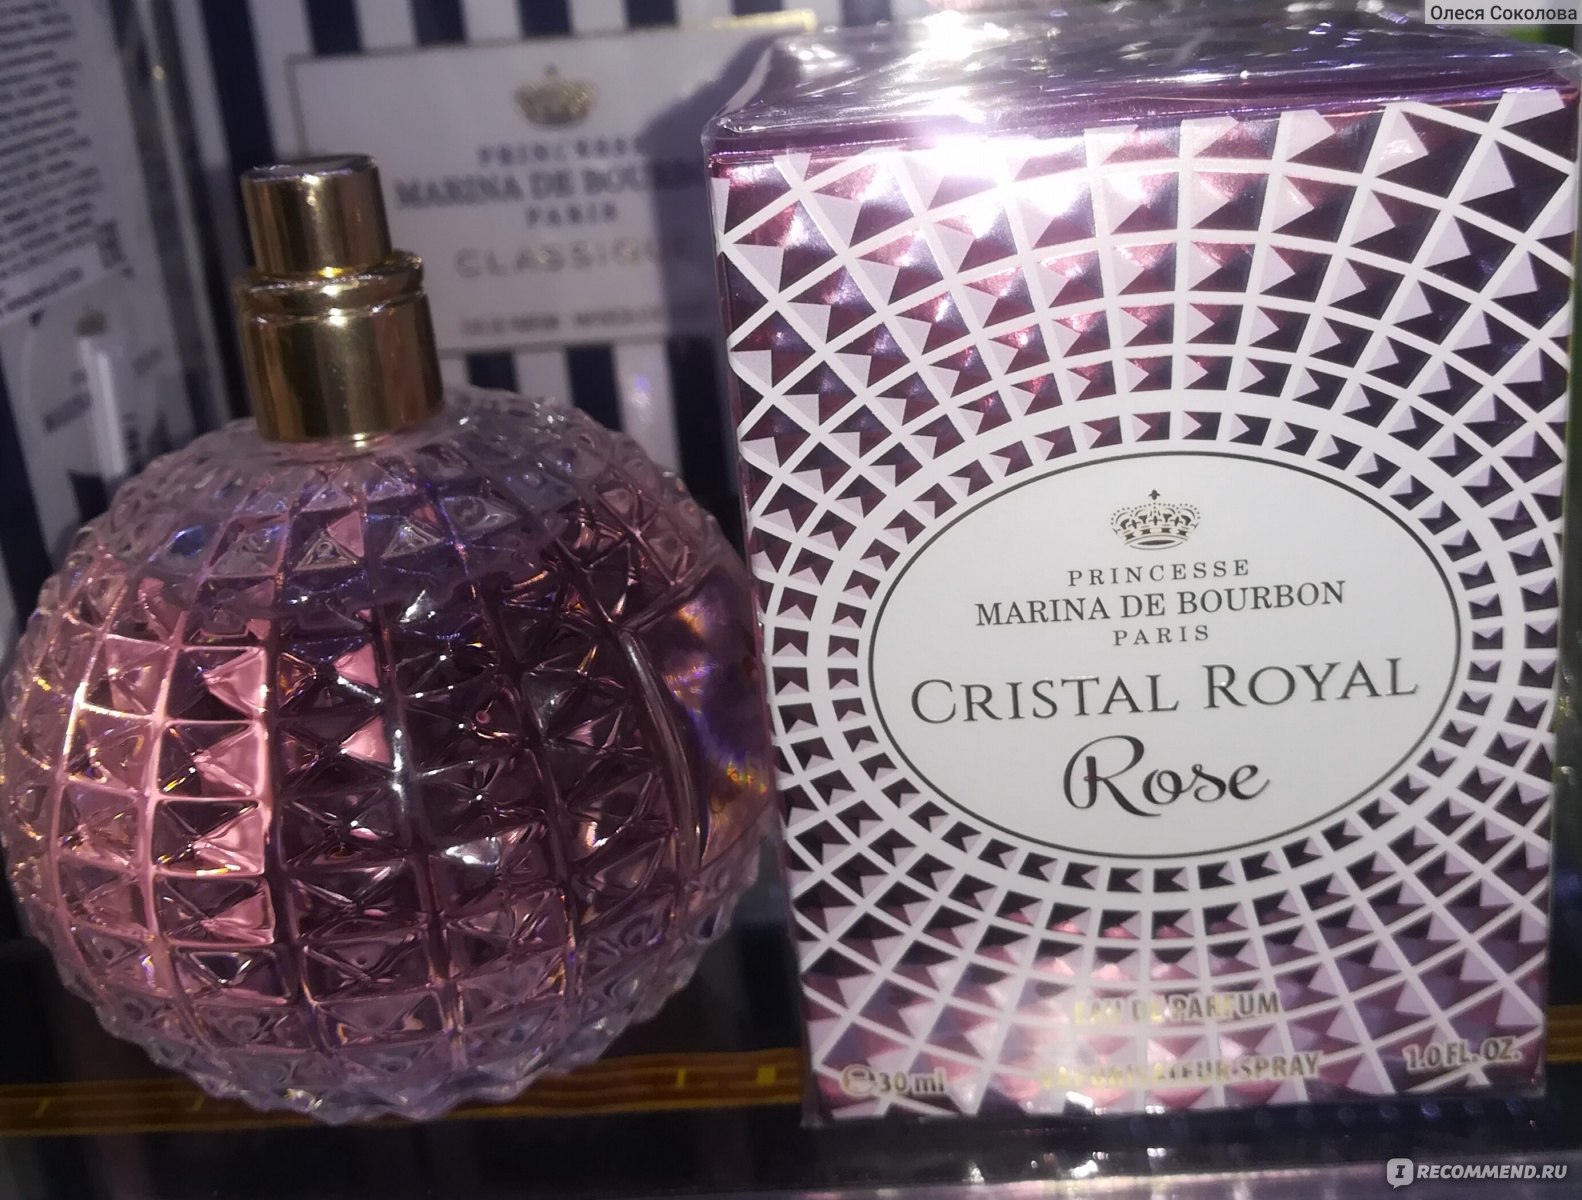 Marina de bourbon cristal royal. Marina de Bourbon Crystal Royal Rose. Marina de Bourbon Rose.